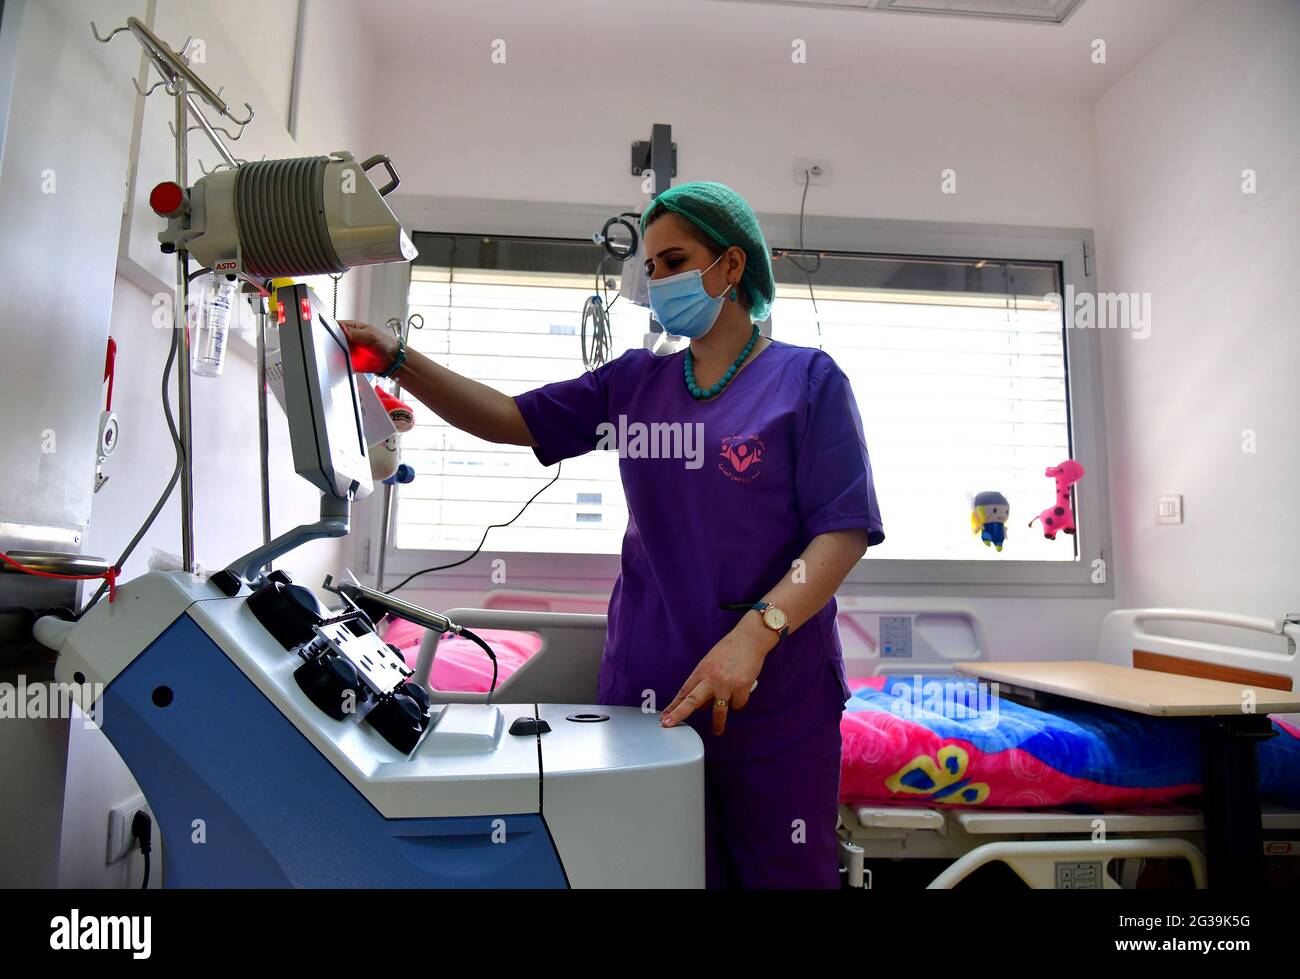 Damas, Syrie. 14 juin 2021. Un travailleur médical syrien vérifie un appareil dans un nouveau centre de transplantation de cellules souches sanguines et de thérapie cellulaire pour les enfants à Damas, Syrie, le 14 juin 2021. Le premier centre de greffe de cellules souches sanguines et de thérapie cellulaire pour les enfants en Syrie devrait être lancé dans les prochaines semaines après de nombreuses années de travail acharné, a déclaré lundi le chef du centre aux journalistes. Credit: STR/Xinhua/Alay Live News Banque D'Images